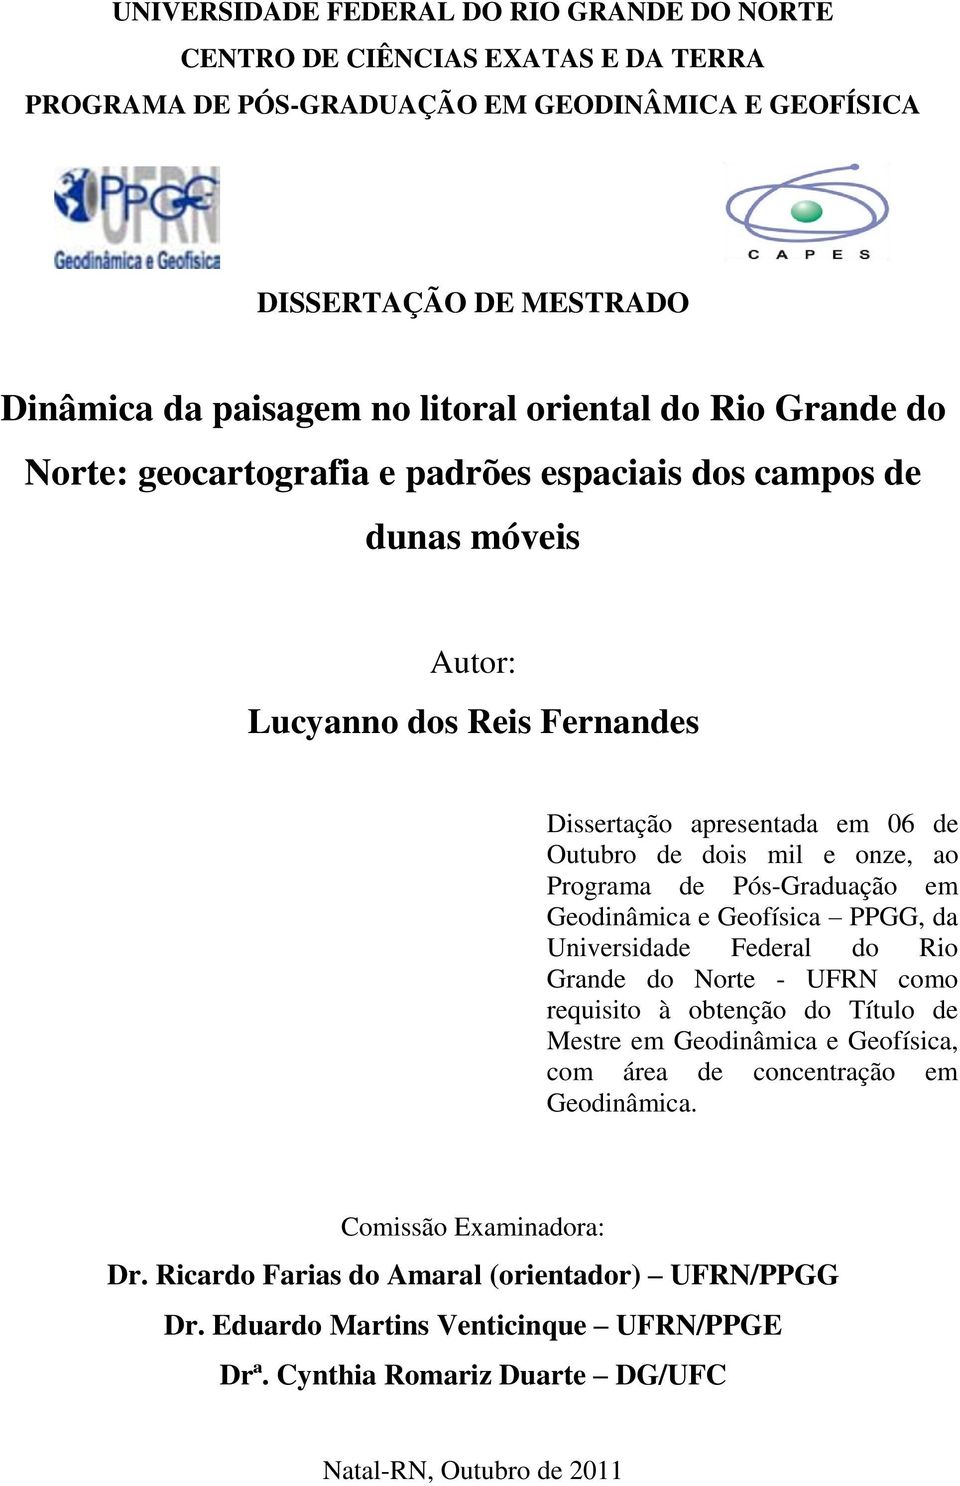 Programa de Pós-Graduação em Geodinâmica e Geofísica PPGG, da Universidade Federal do Rio Grande do Norte - UFRN como requisito à obtenção do Título de Mestre em Geodinâmica e Geofísica, com área